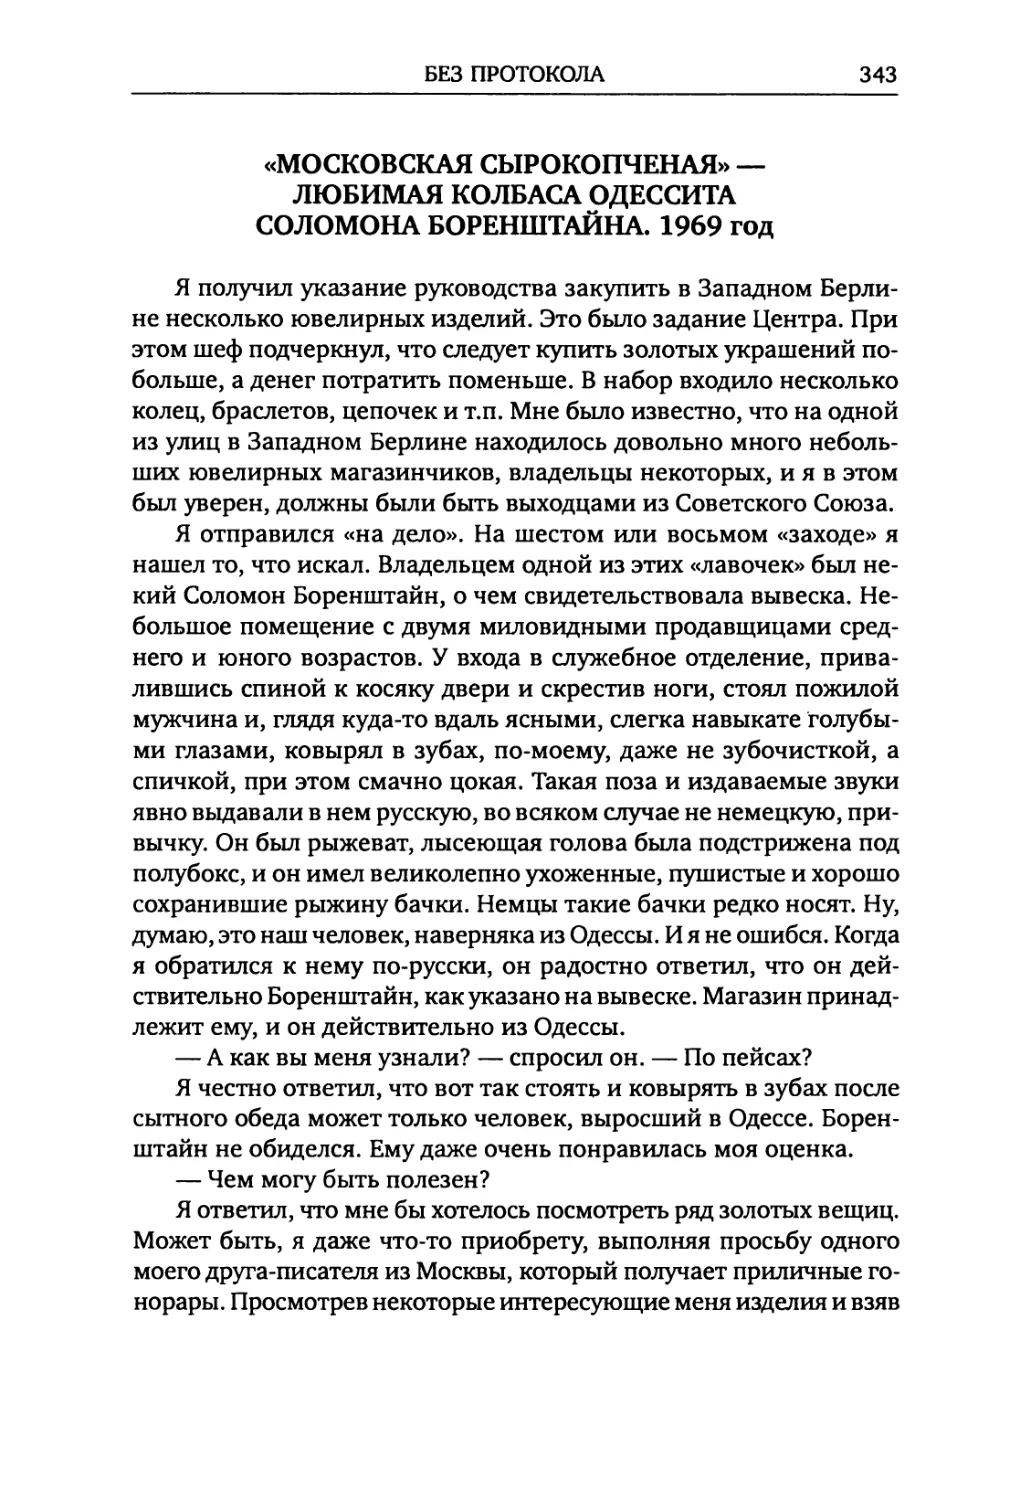 «Московская сырокопченая» — любимая колбаса одессита Соломона Боренштайна. 1969 год